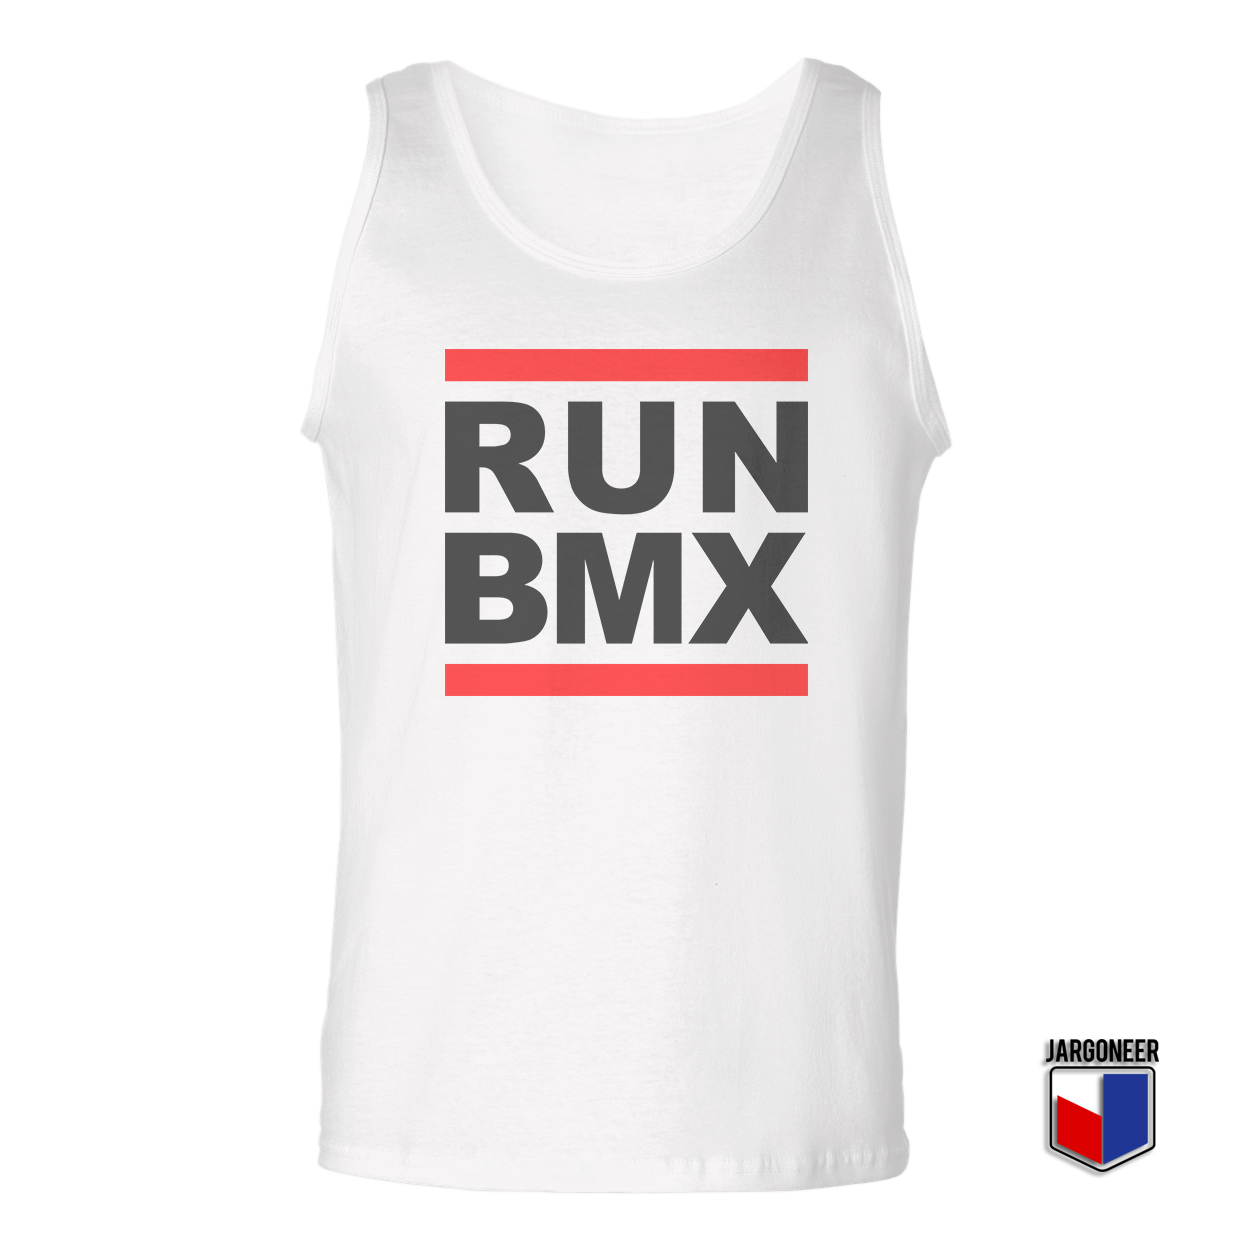 Run BMX White Tank Top - Shop Unique Graphic Cool Shirt Designs